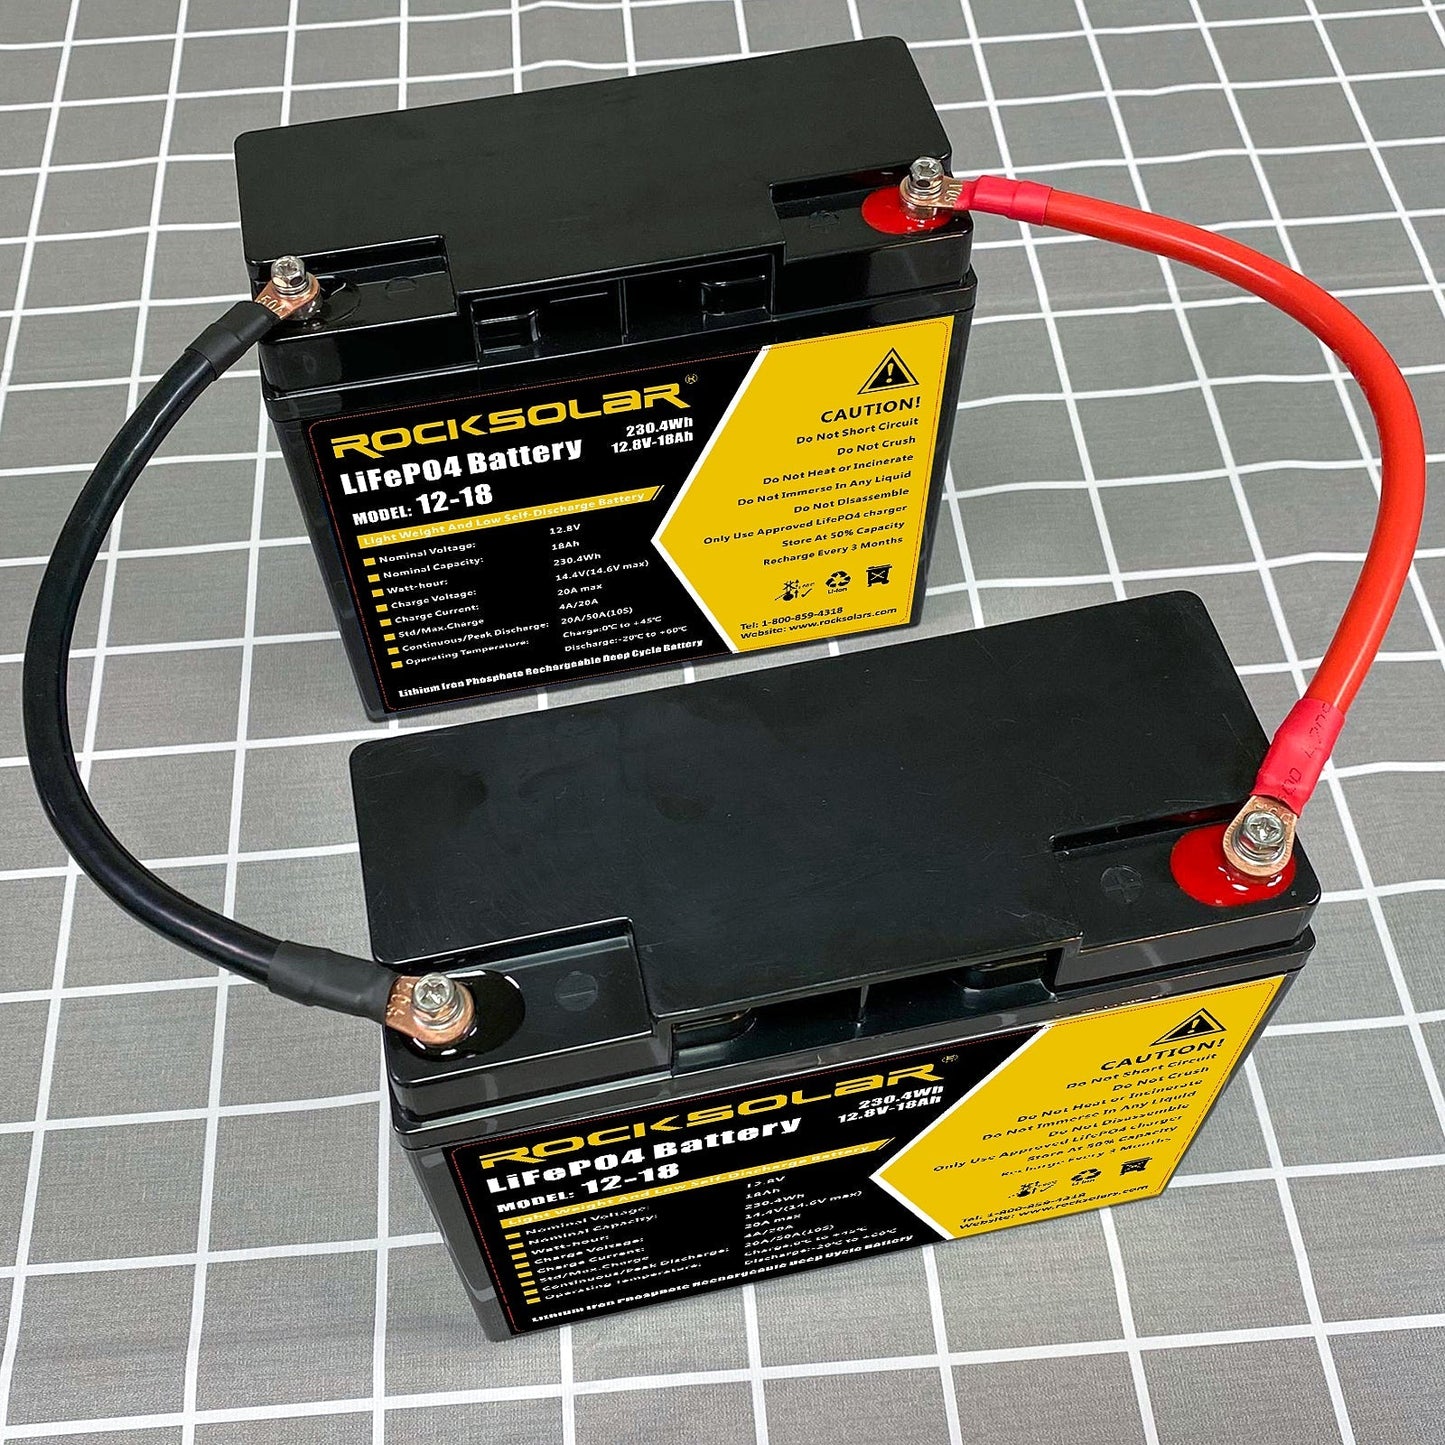 Rocksolar 6AWG Series Wiring Kit For 12V Batteries To 24V, 36V OR 48V